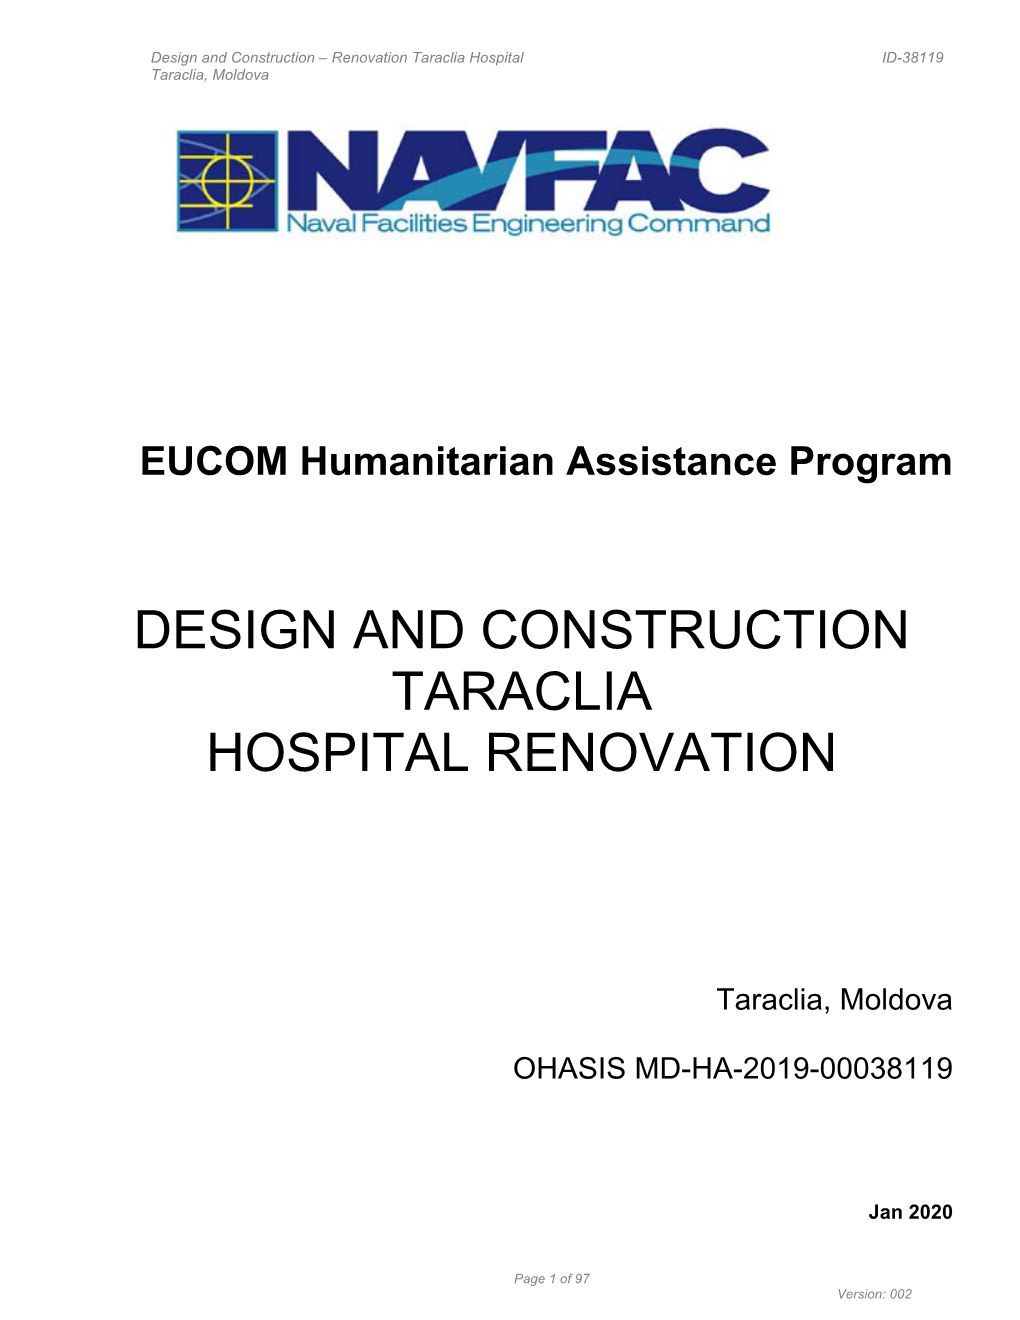 Design and Construction Taraclia Hospital Renovation